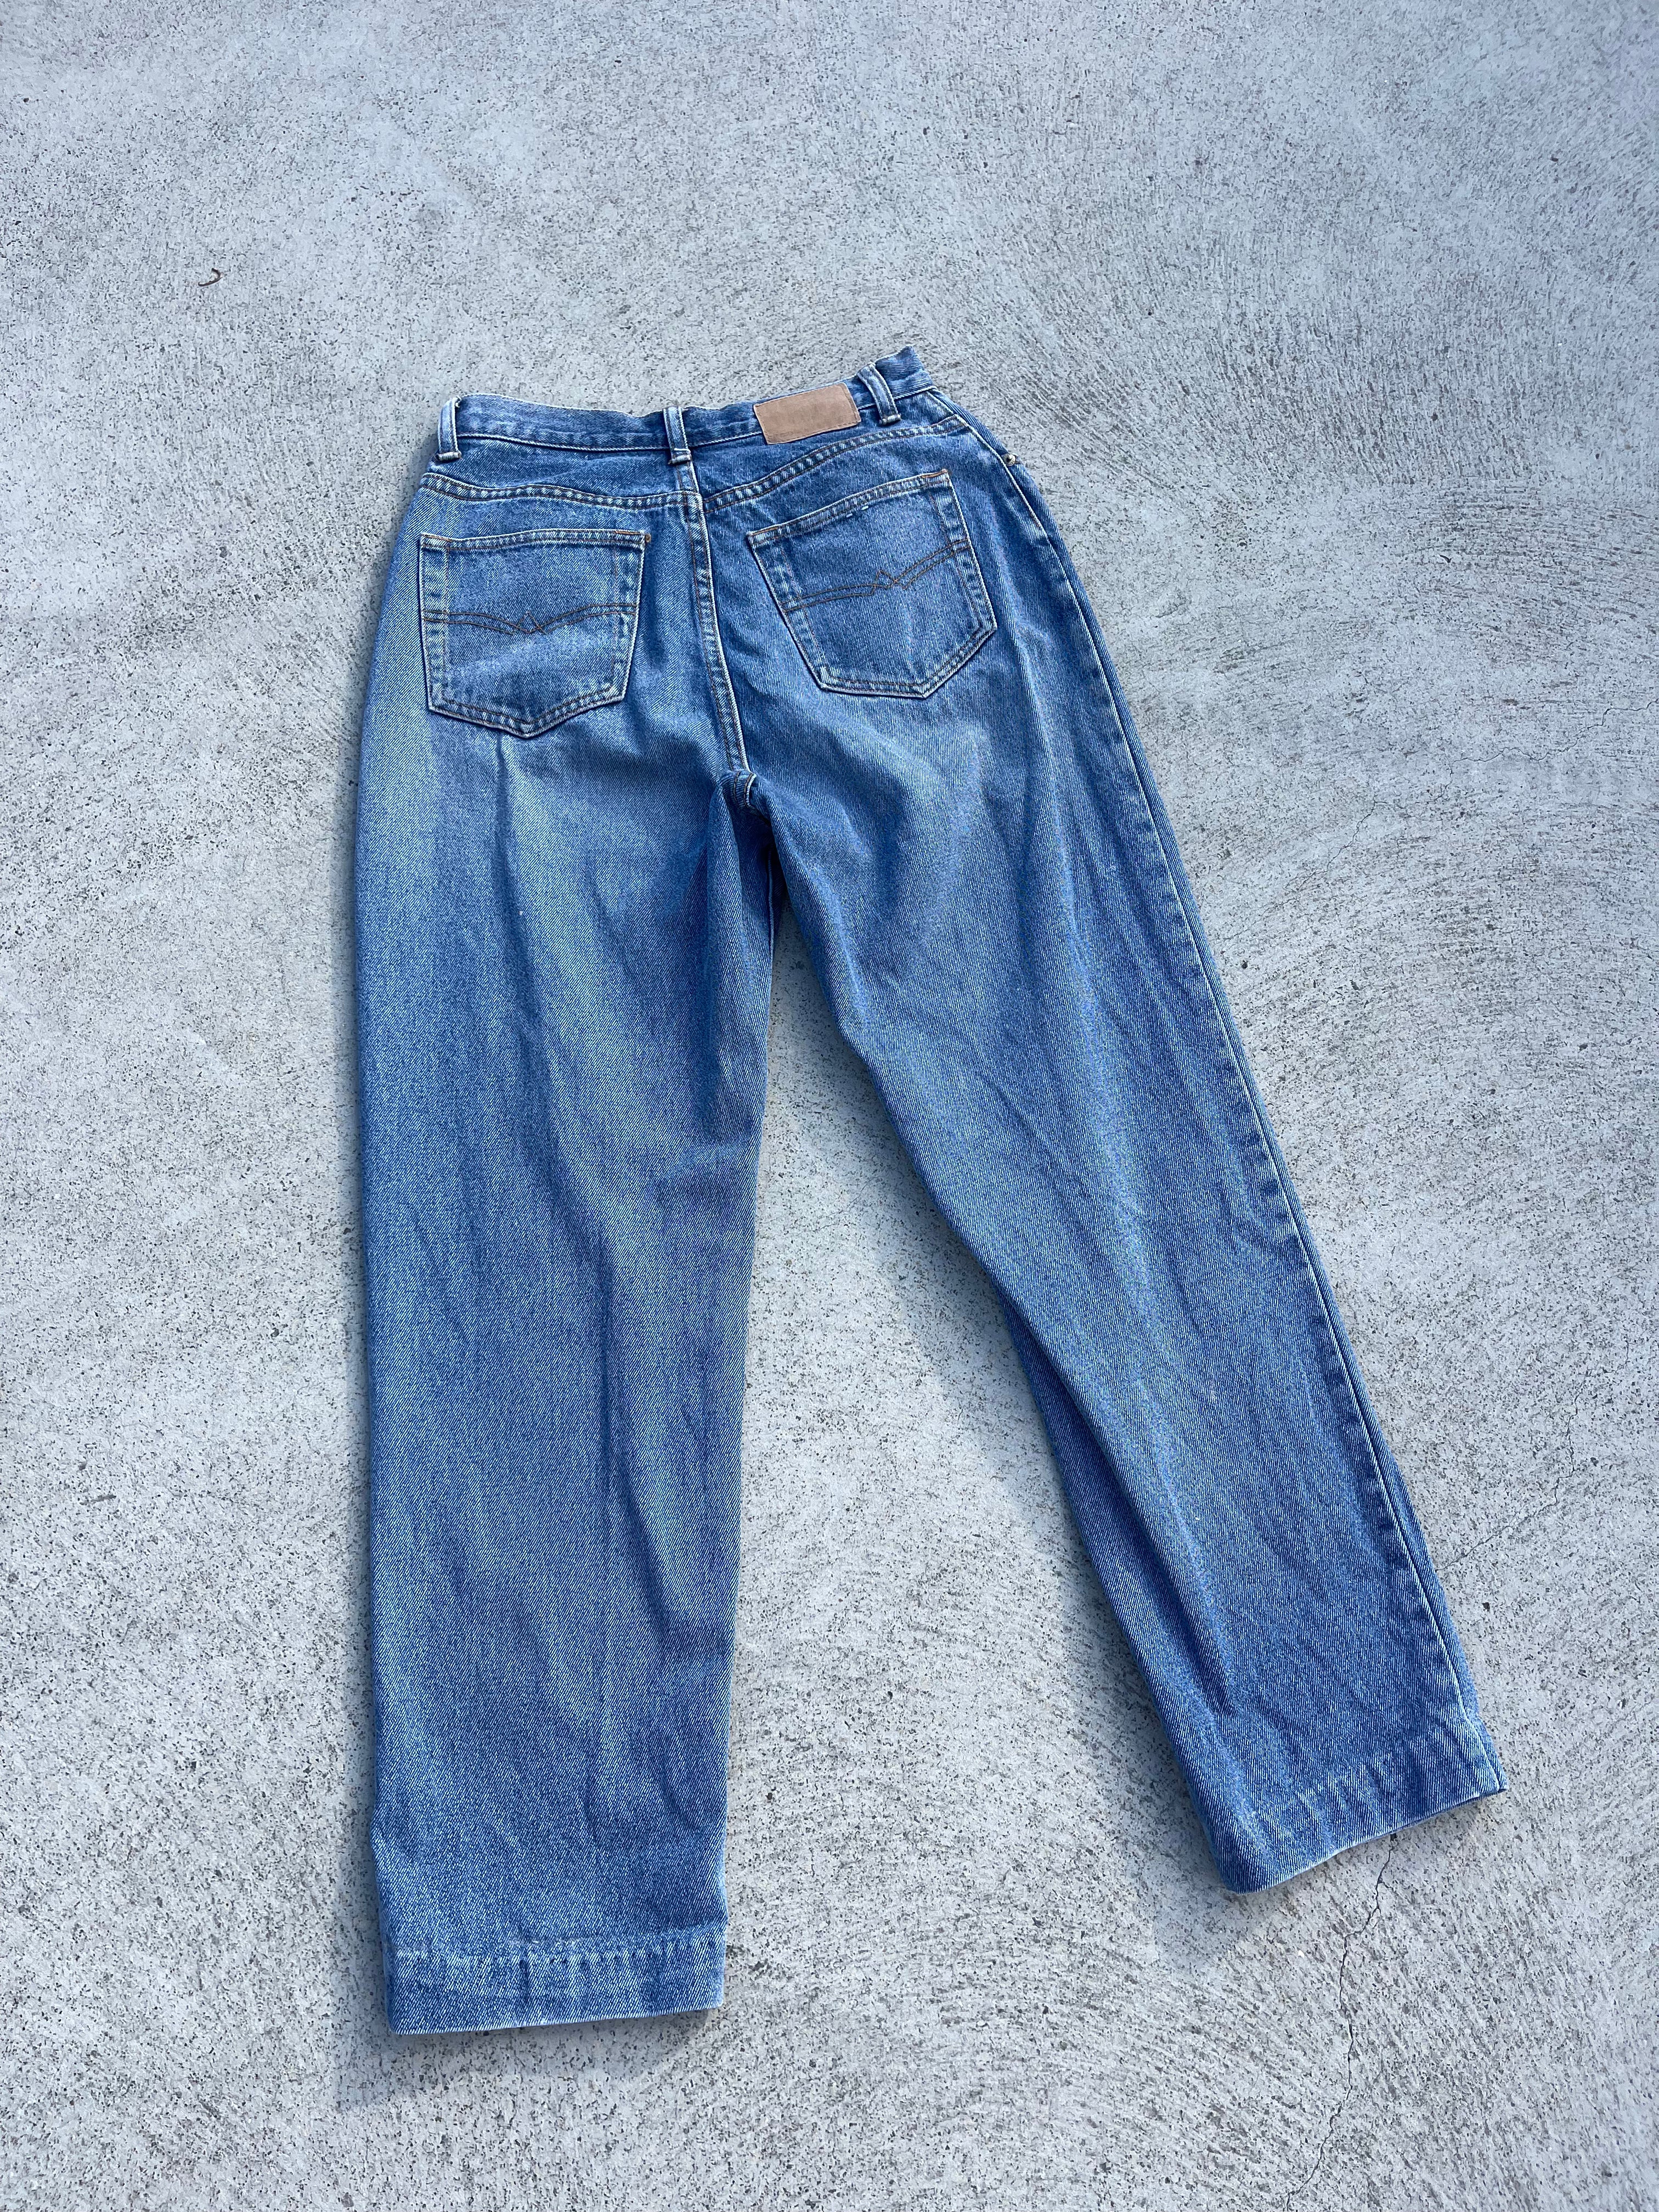 Vintage Jeans West Jeans (6-8)